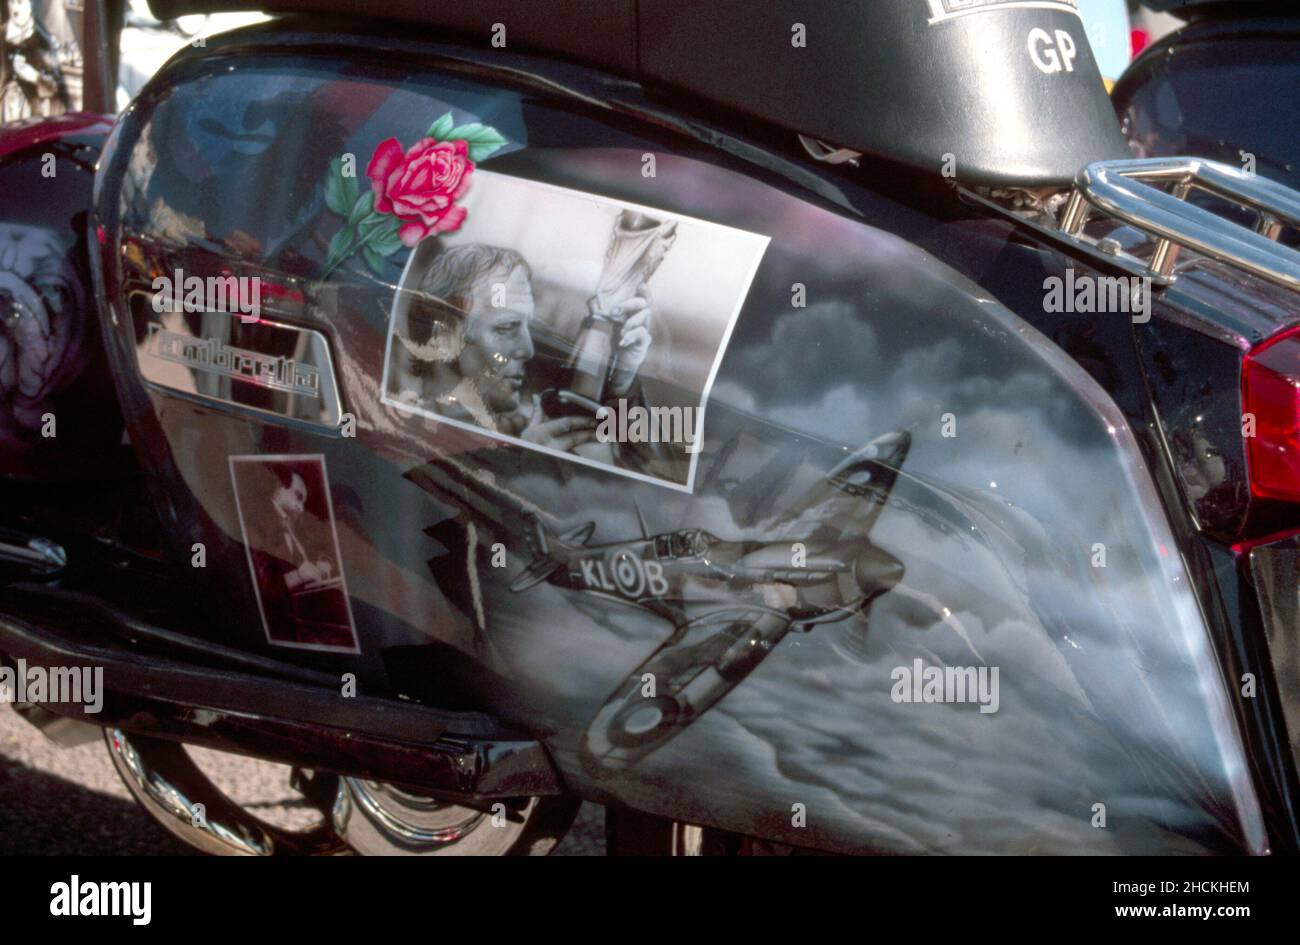 Spitfire Fighter Airplane auf der Seitenwand eines Rollers lackiert. Motorradkunst, britisches Kulturkonzept Stockfoto